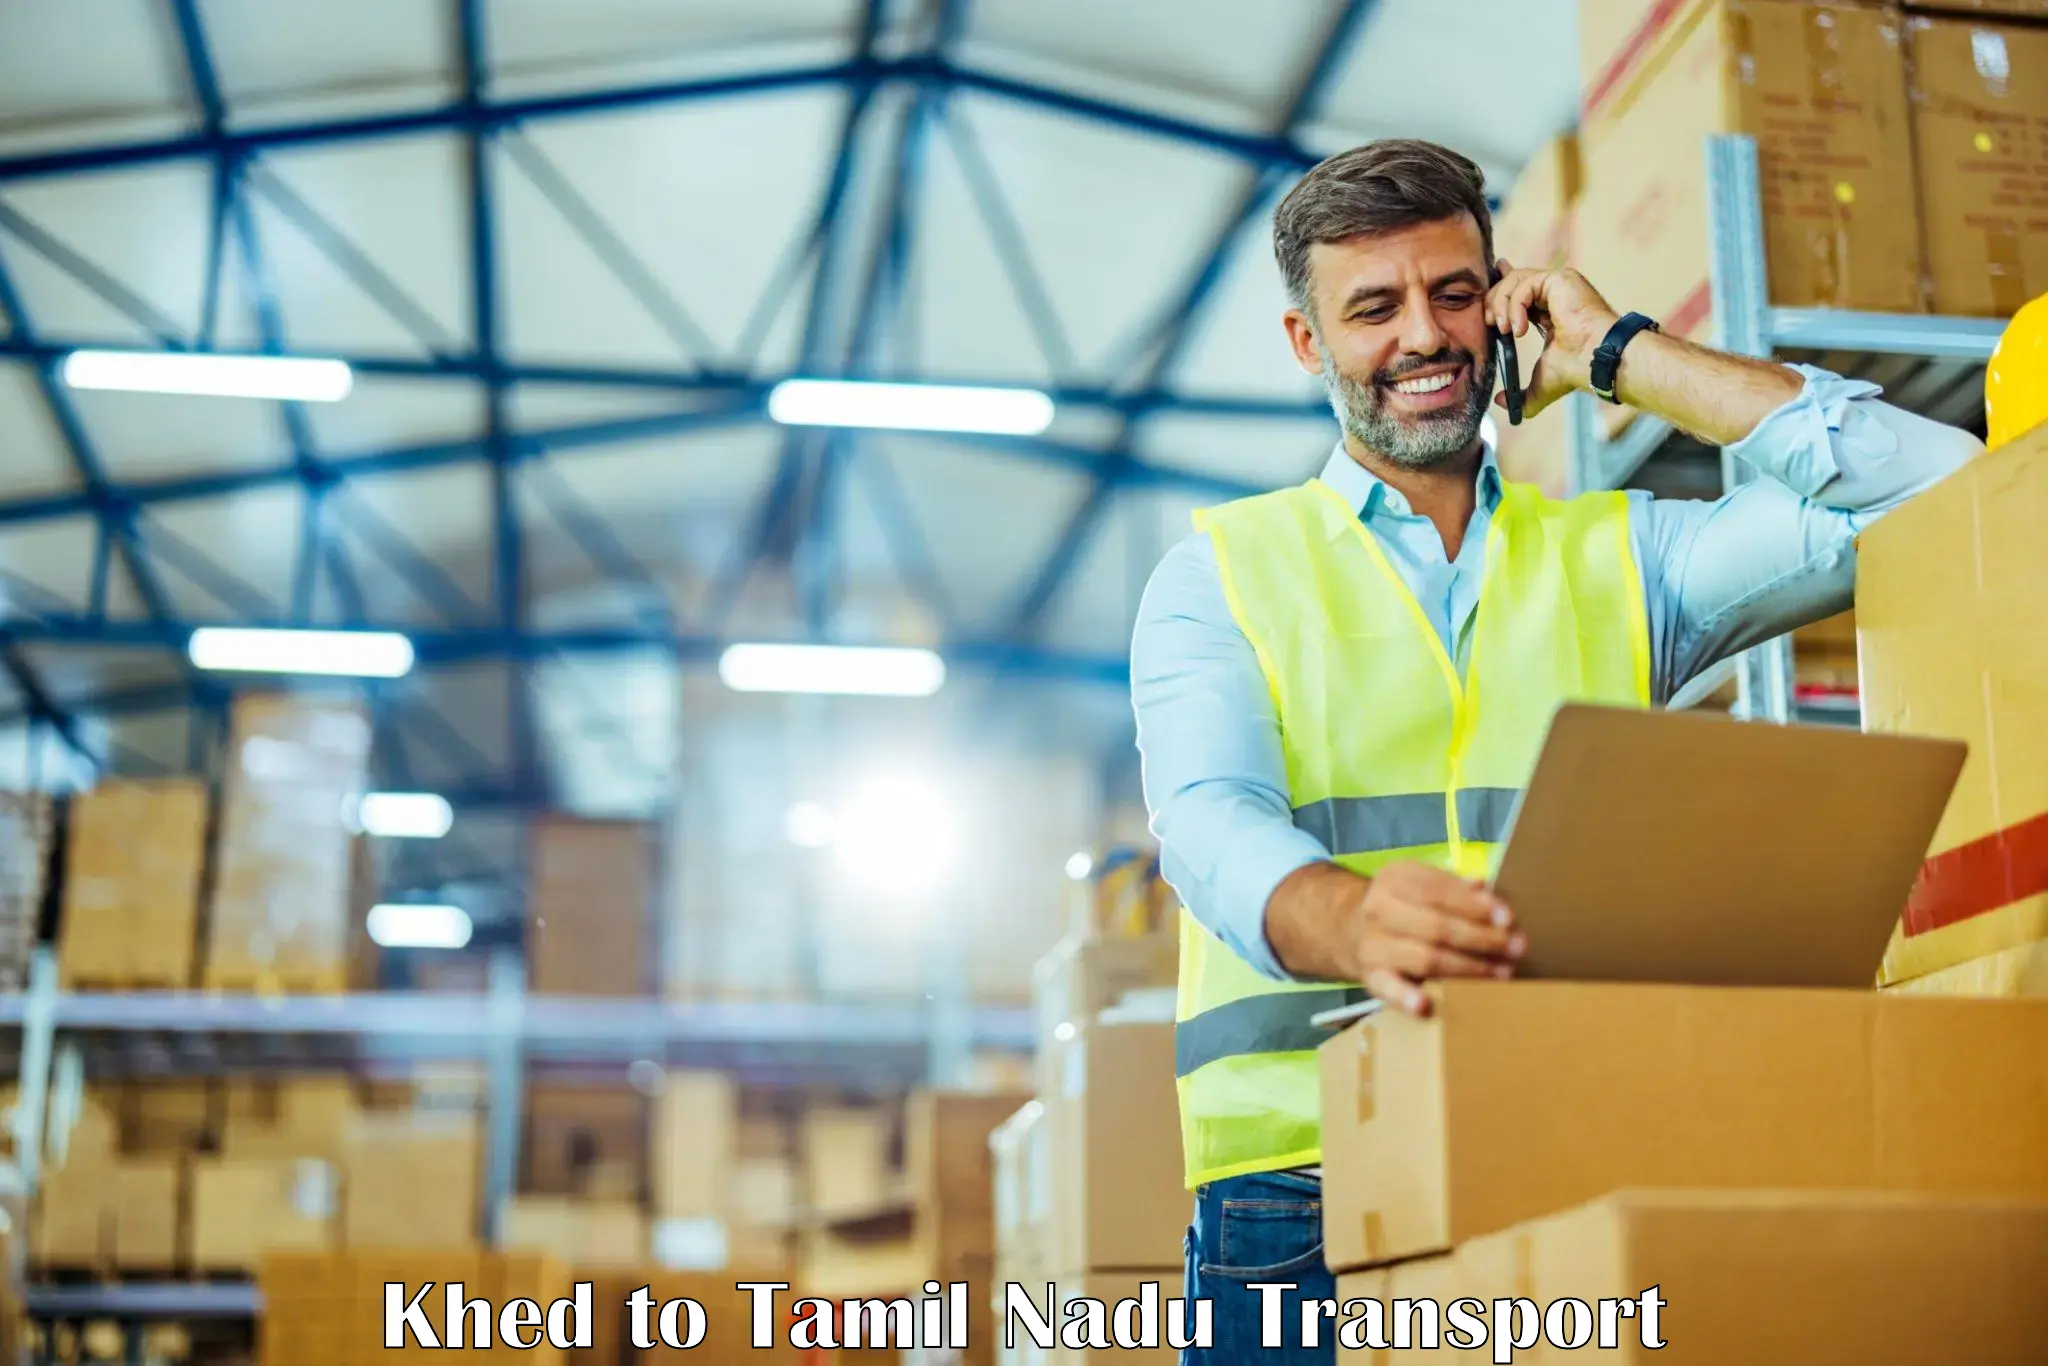 Daily parcel service transport Khed to Kovilpatti